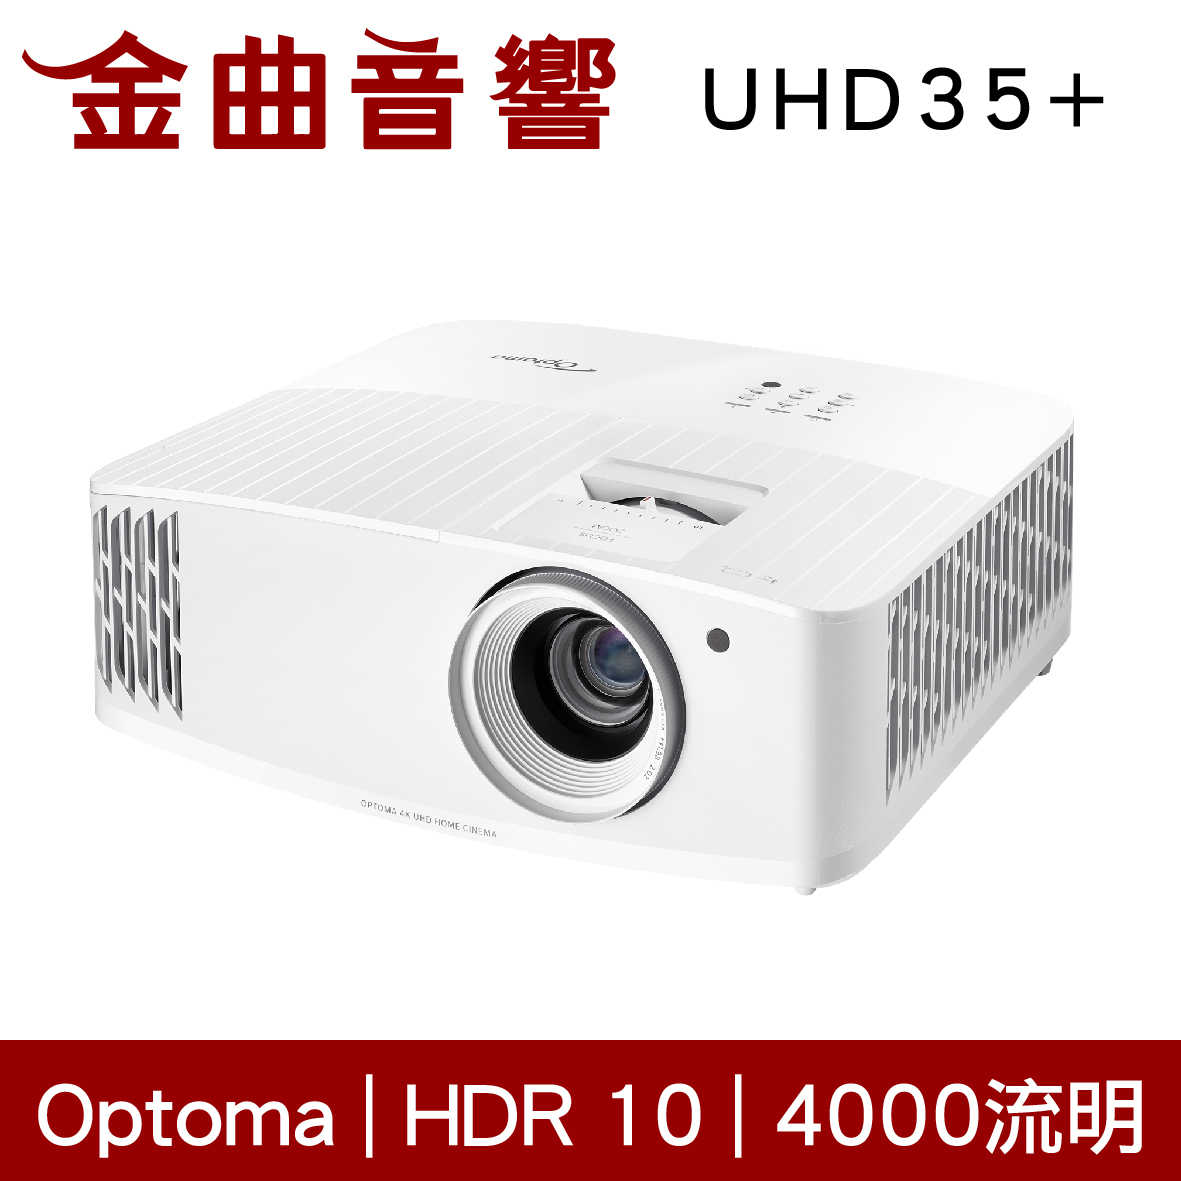 Optoma 奧圖碼 UHD35+ Full HD 4K HDMI 低噪音 高亮度 商用 投影機 | 金曲音響